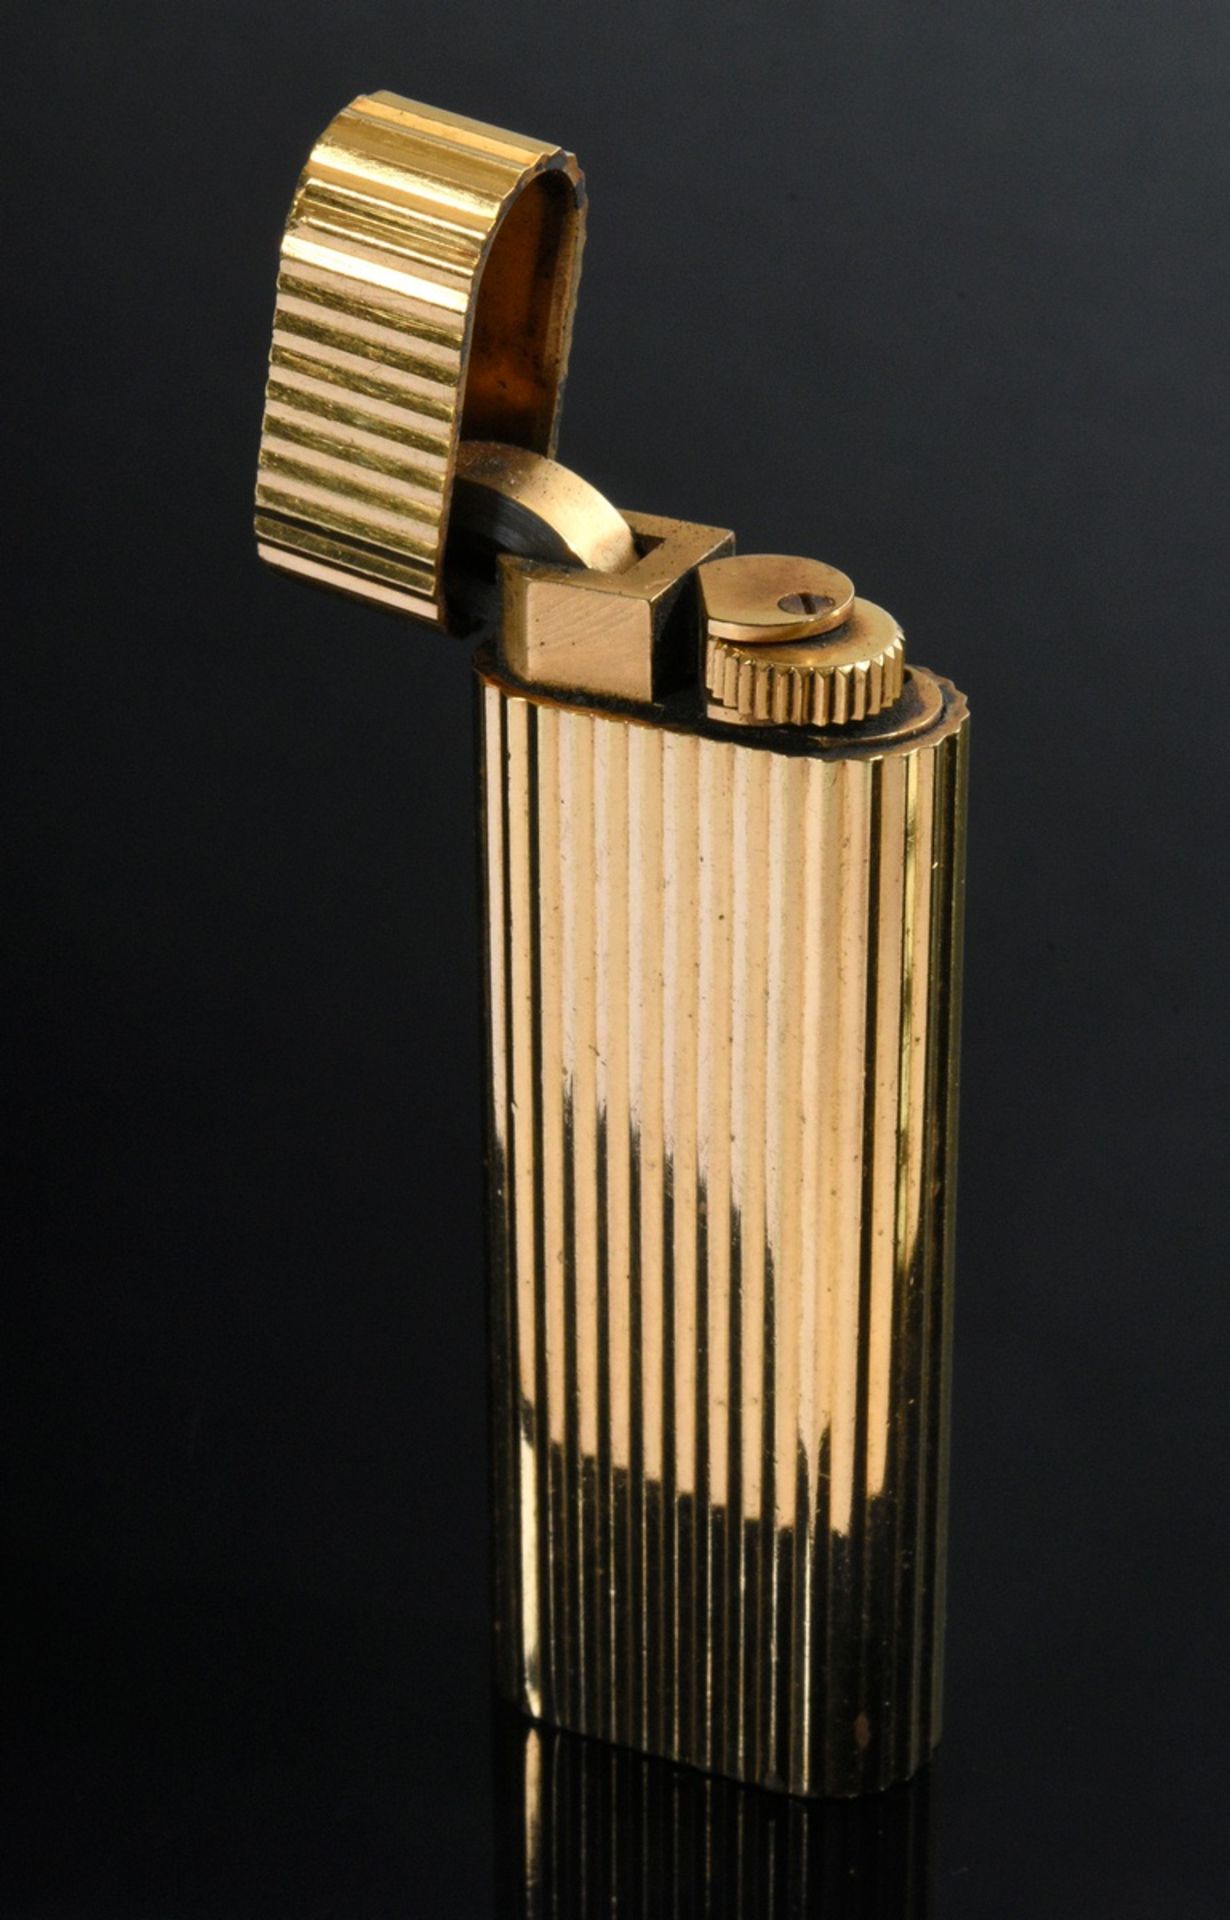 Le Must de Cartier Feuerzeug, Goldauflage, Nr. C 10863, 7x2,5cm, funktionstüchtig, Kratzer, starke 